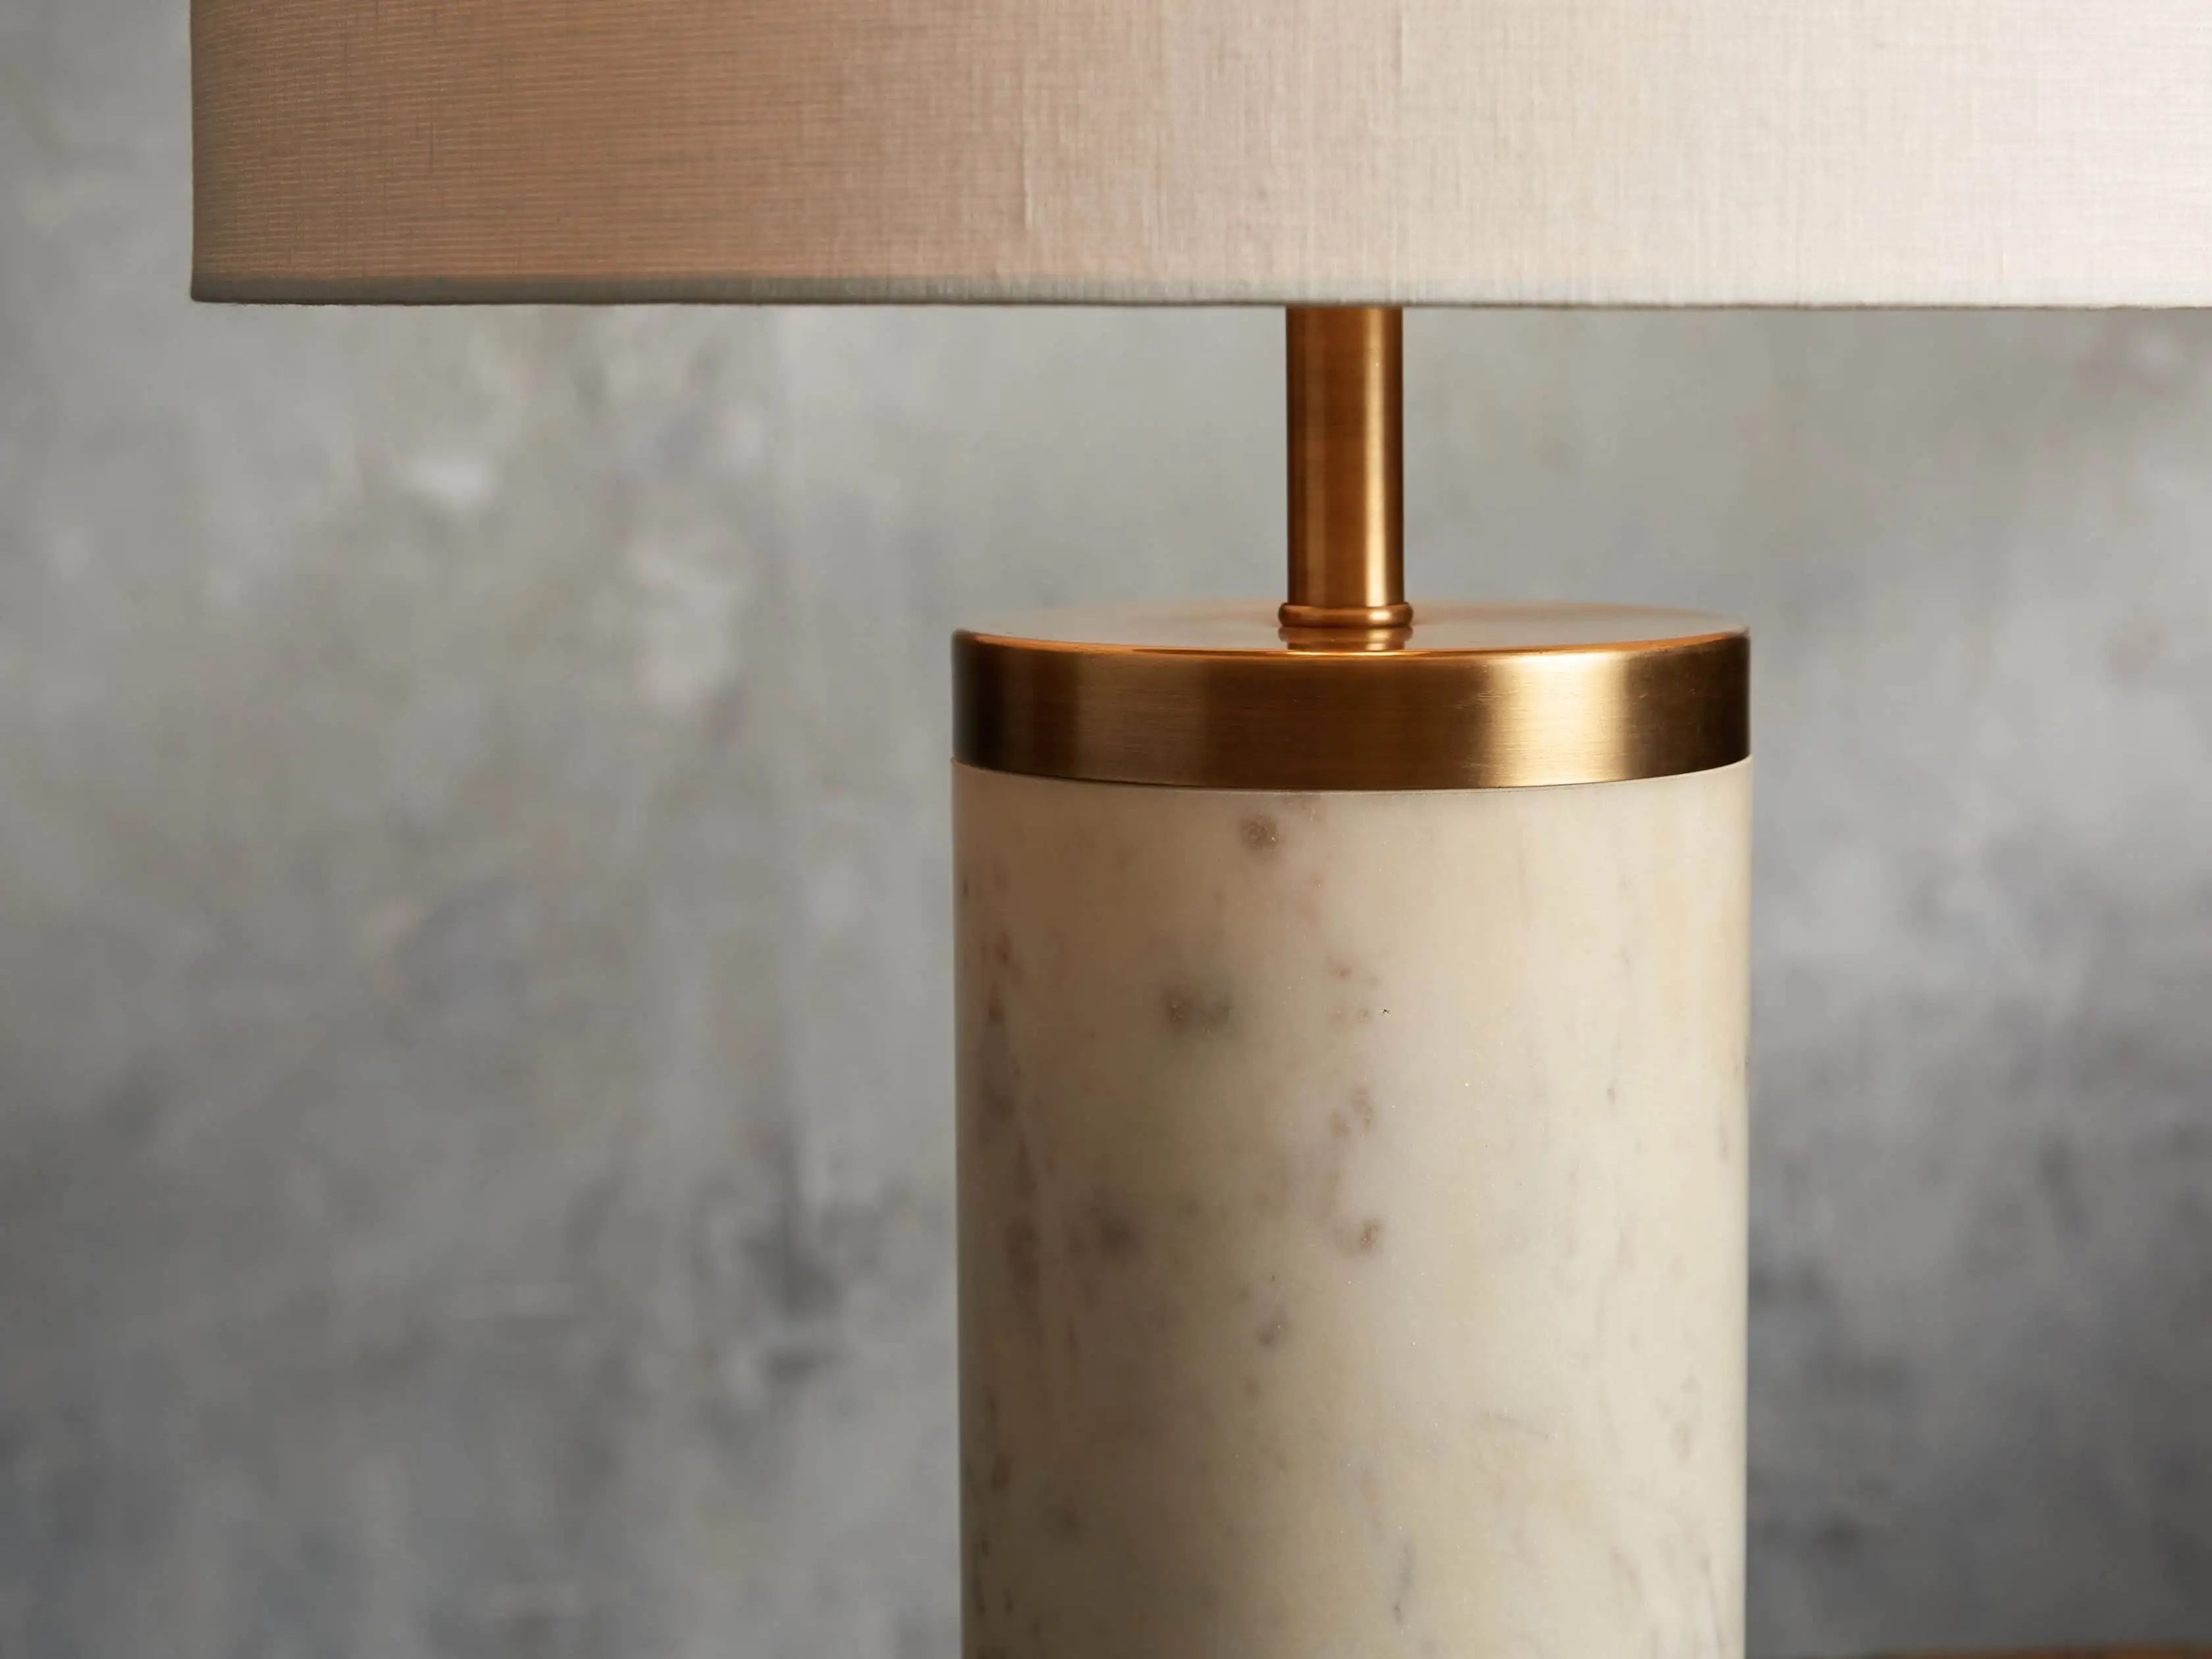 Caseti Table Lamp | Arhaus